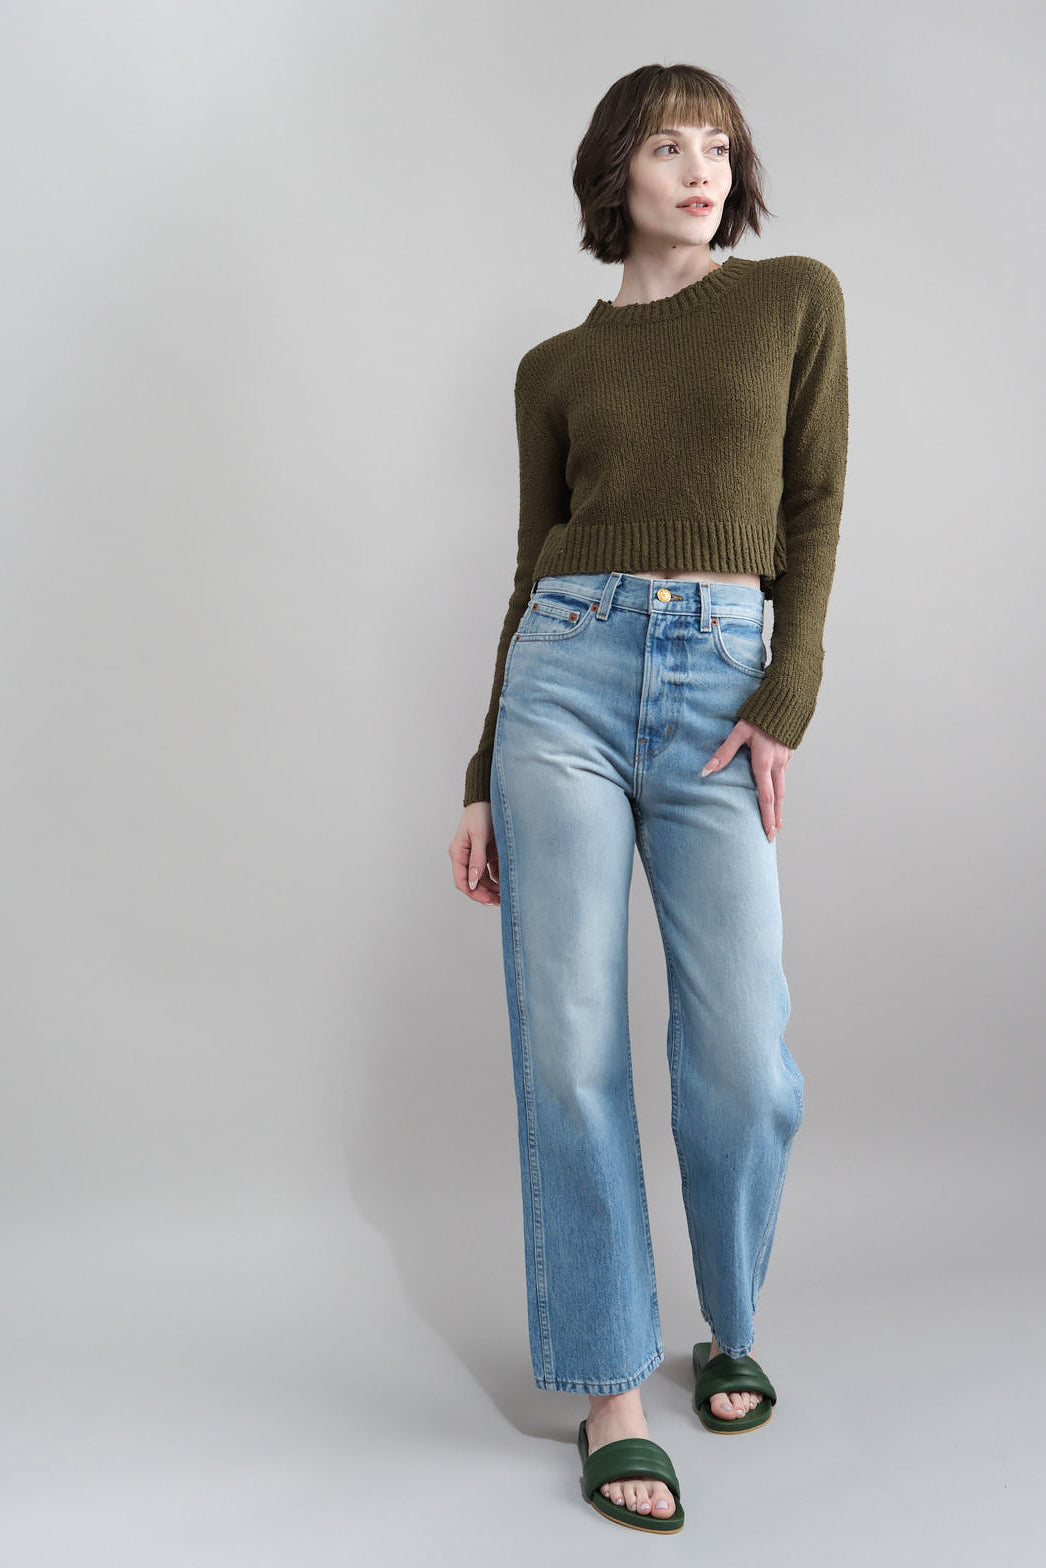 Plein High Straight Jean in Tate Vintage